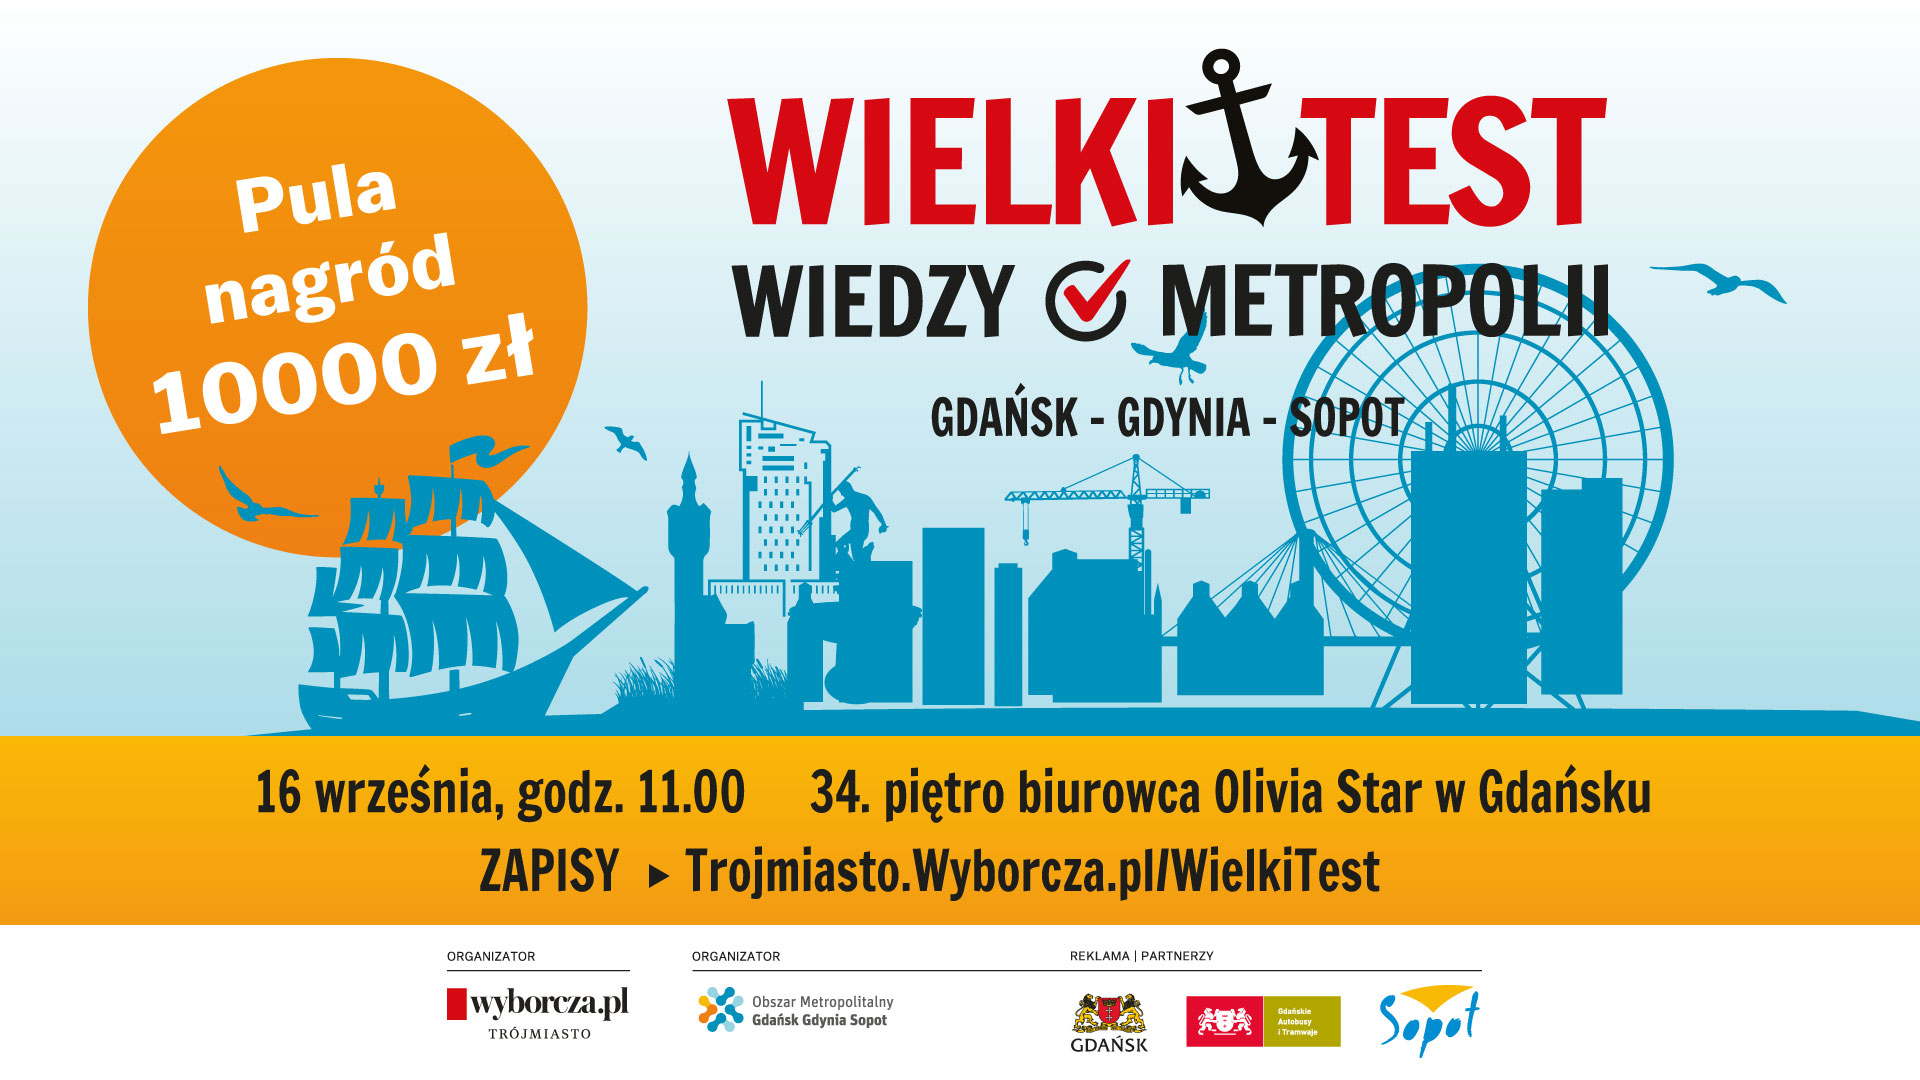 Wielki Test o Metropolii Gdańsk-Gdynia-Sopot